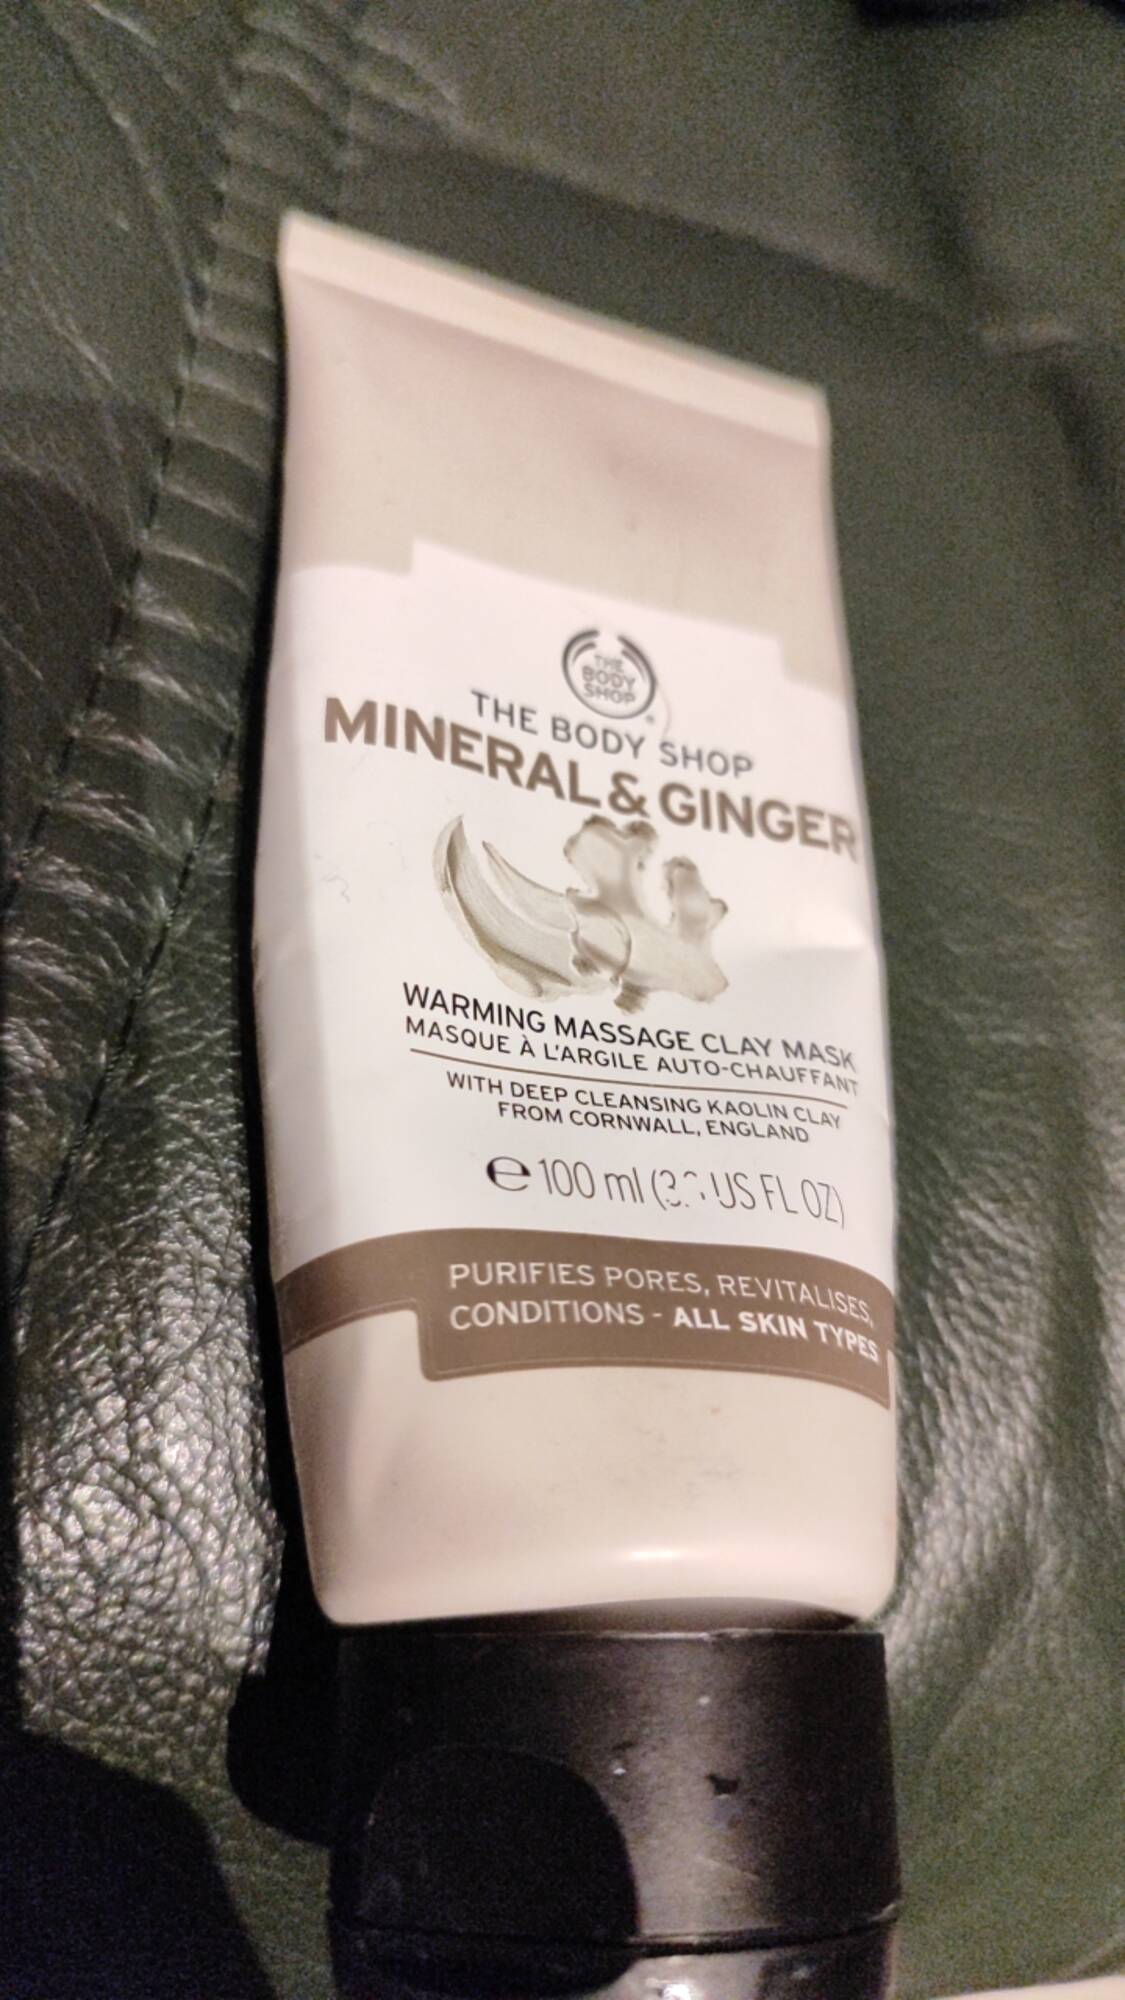 THE BODY SHOP - Mineral & ginger - Masque à l'argile auto-chauffant